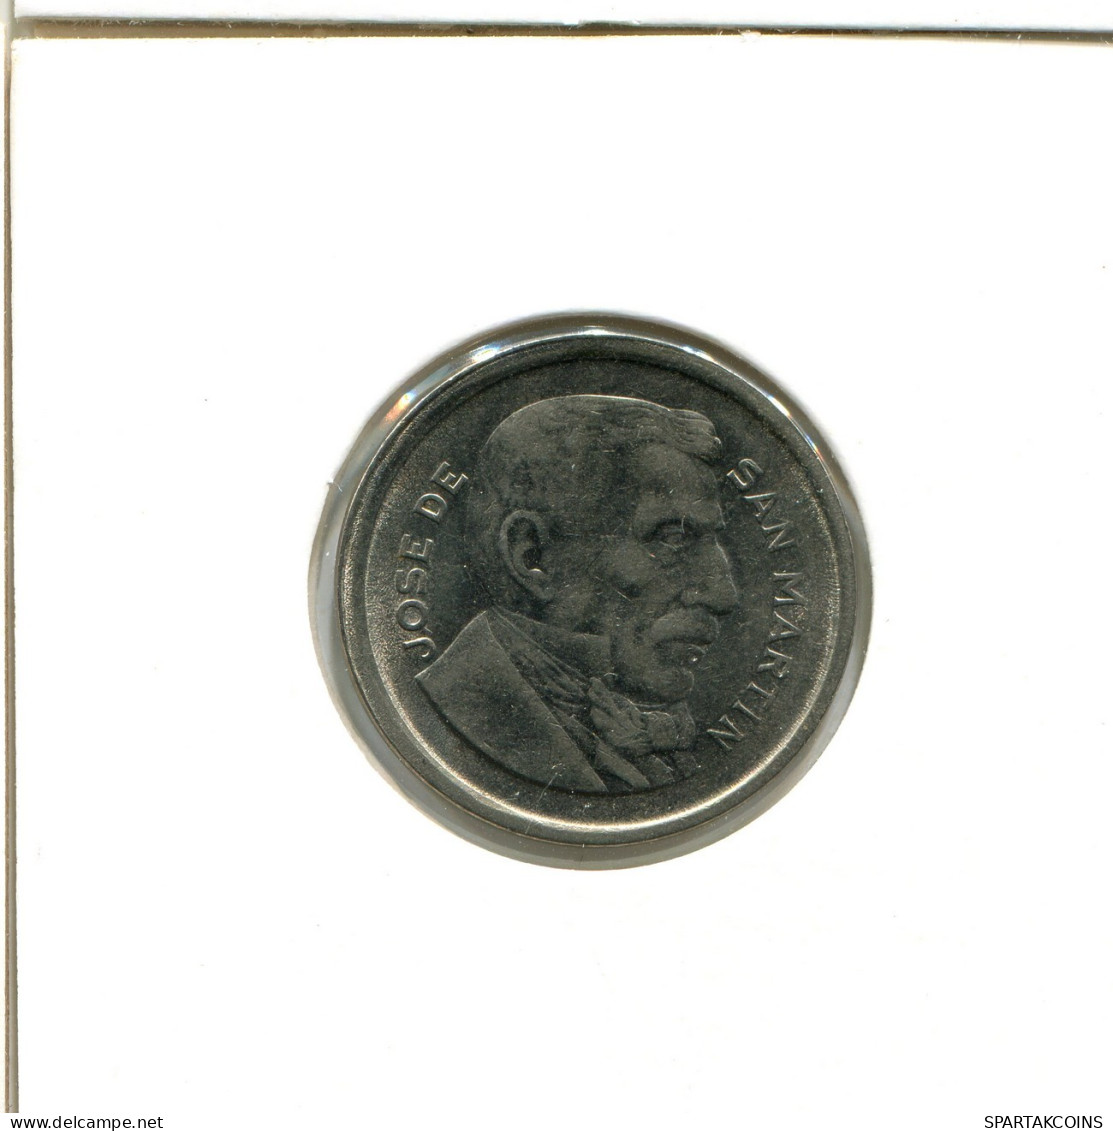 50 CENTAVOS 1955 ARGENTINA Coin #AX295.U.A - Argentine